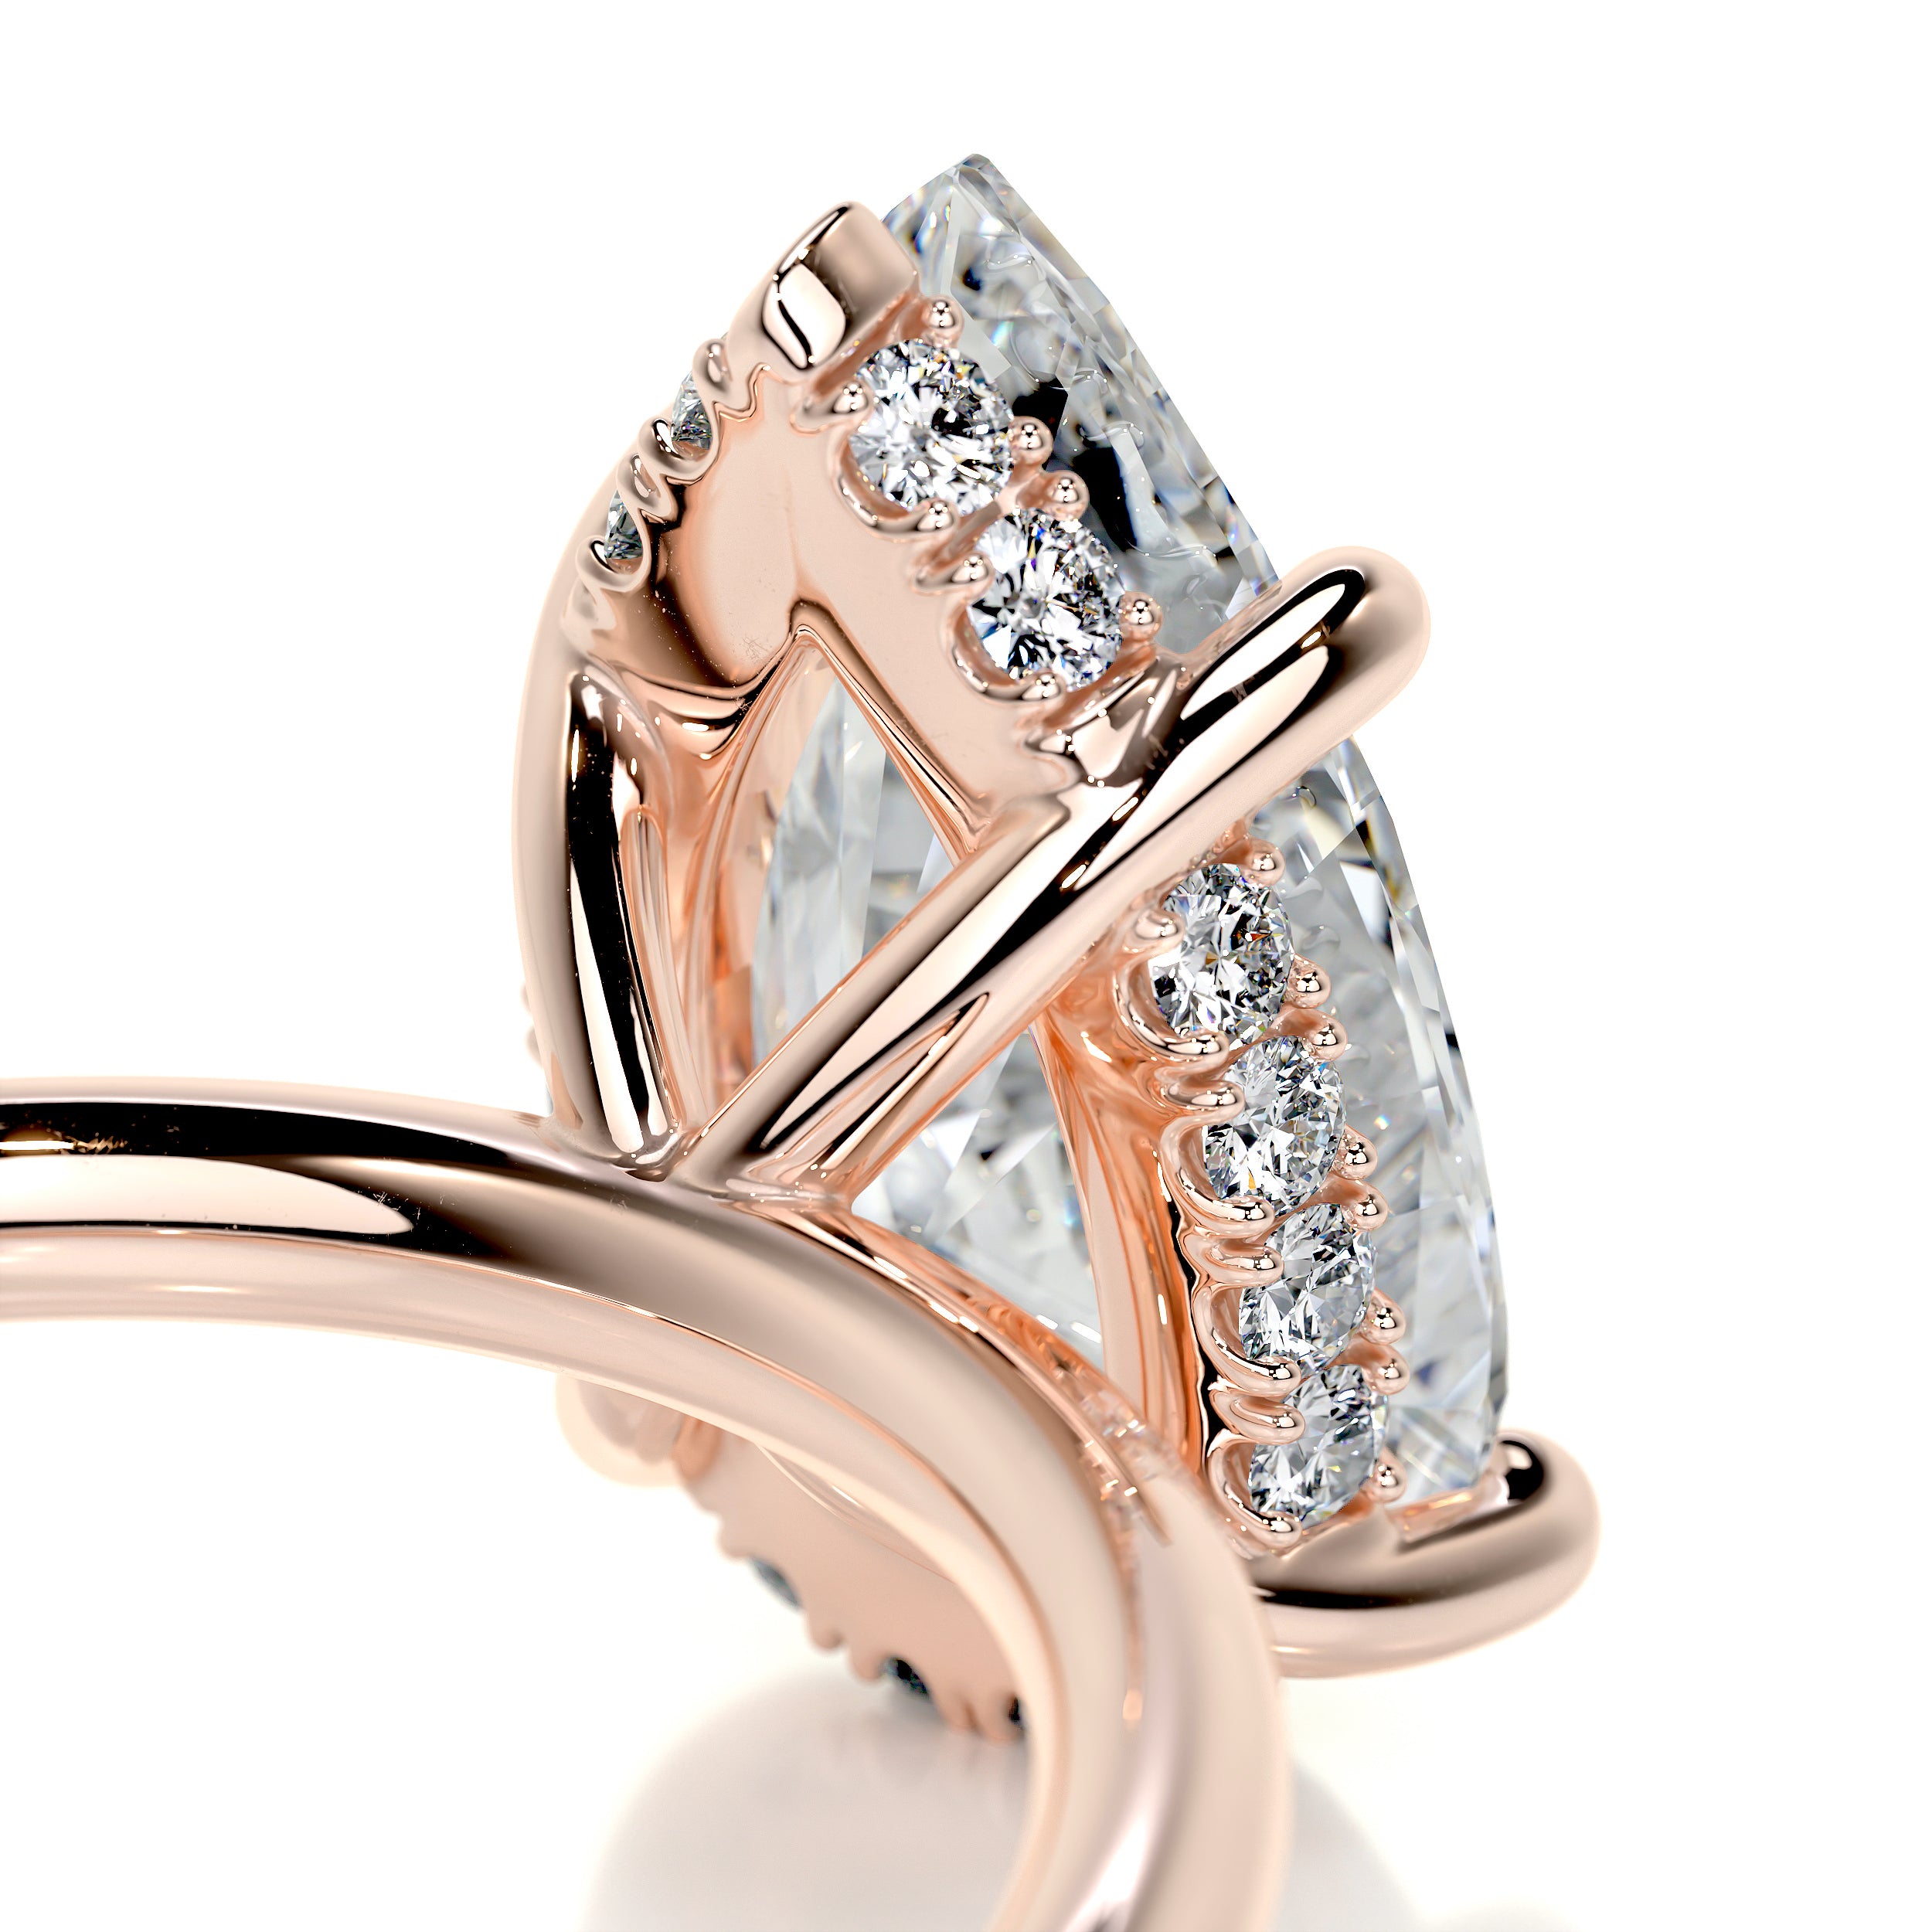 Willow Diamond Engagement Ring   (2.1 Carat) -14K Rose Gold